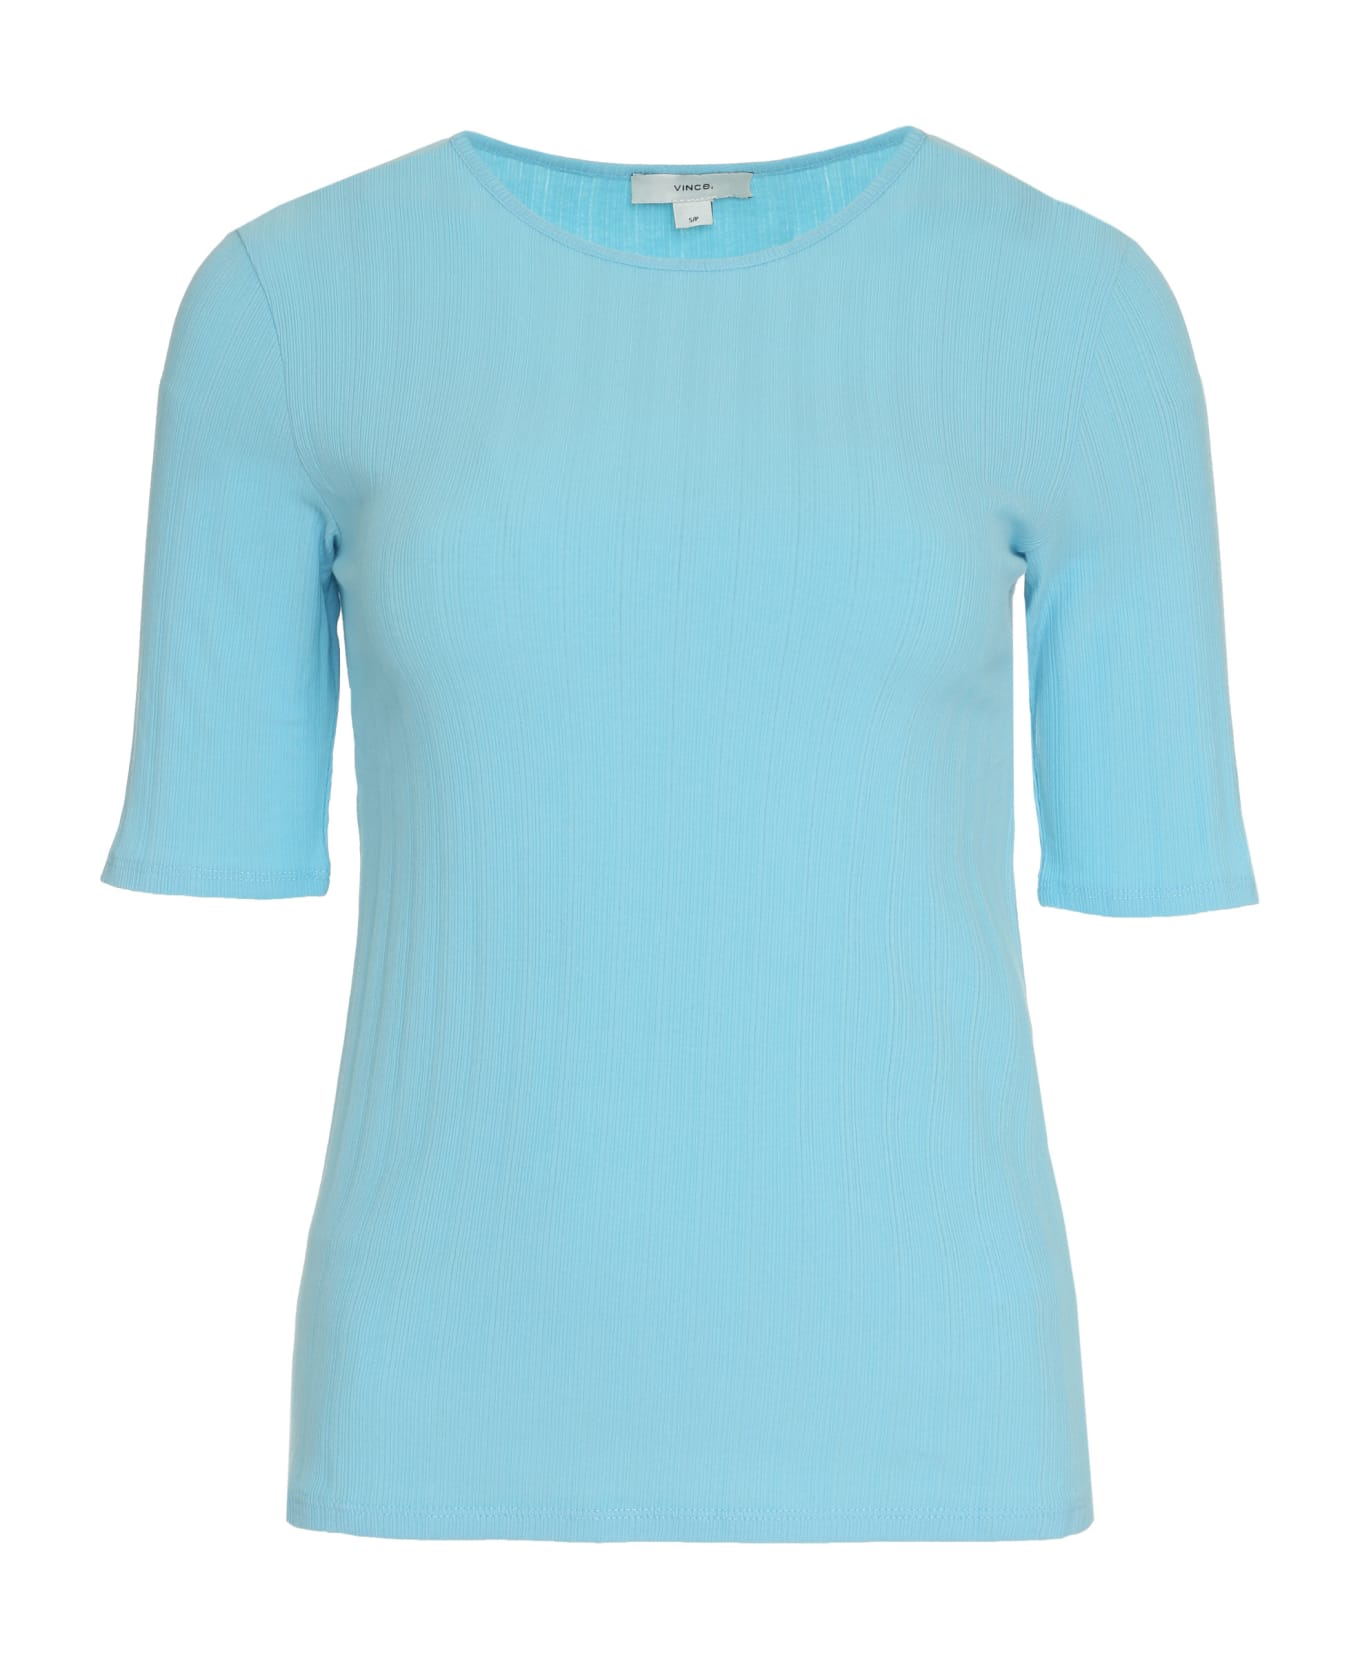 Vince Cotton Knit T-shirt - Light Blue